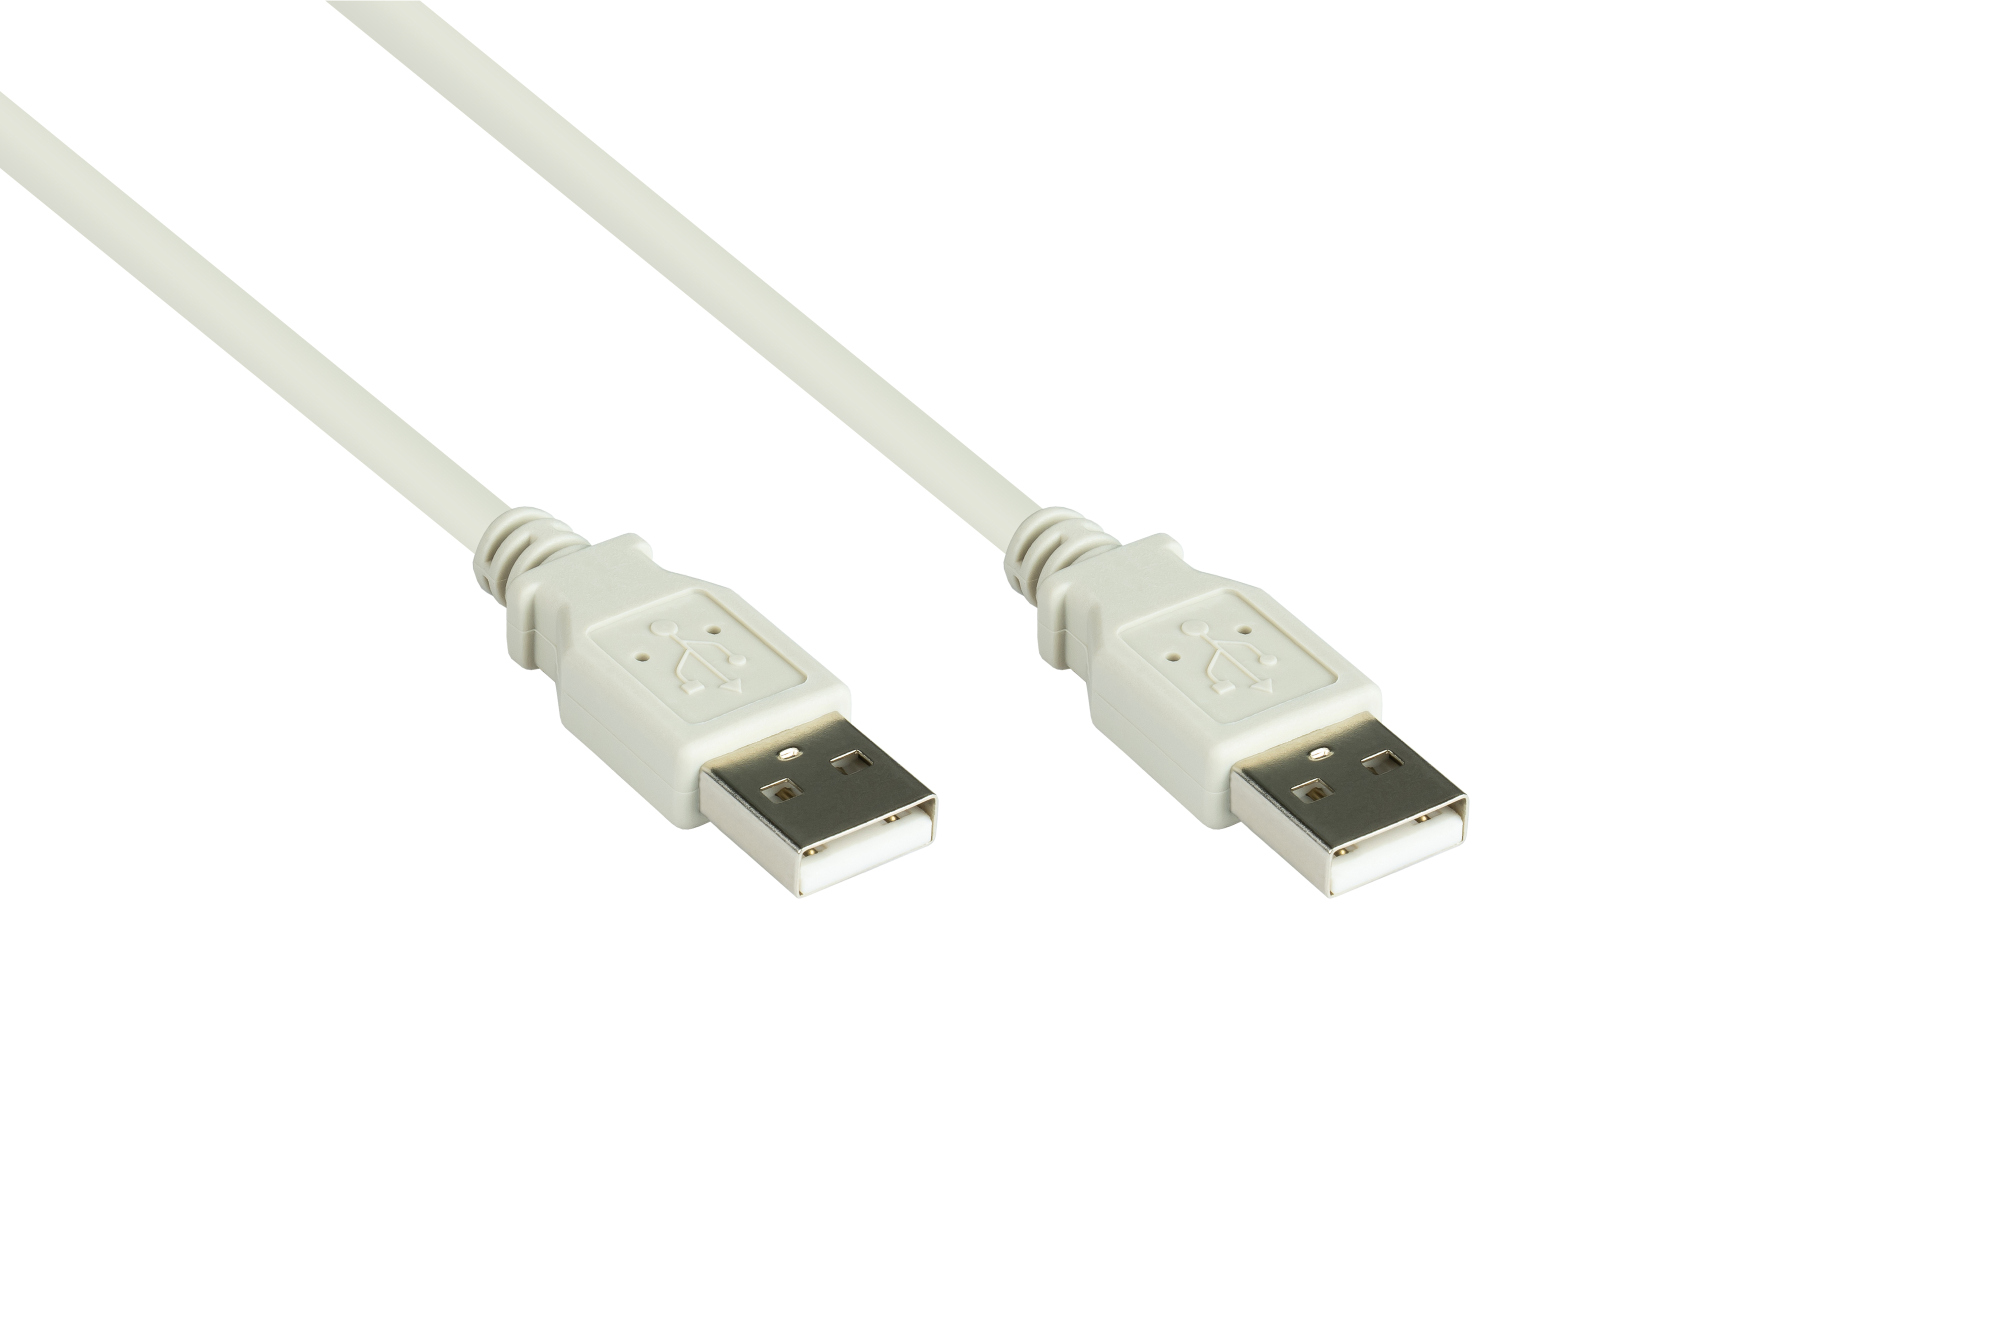 Anschlusskabel USB 2.0 Stecker A an Stecker A, grau, 0,5m